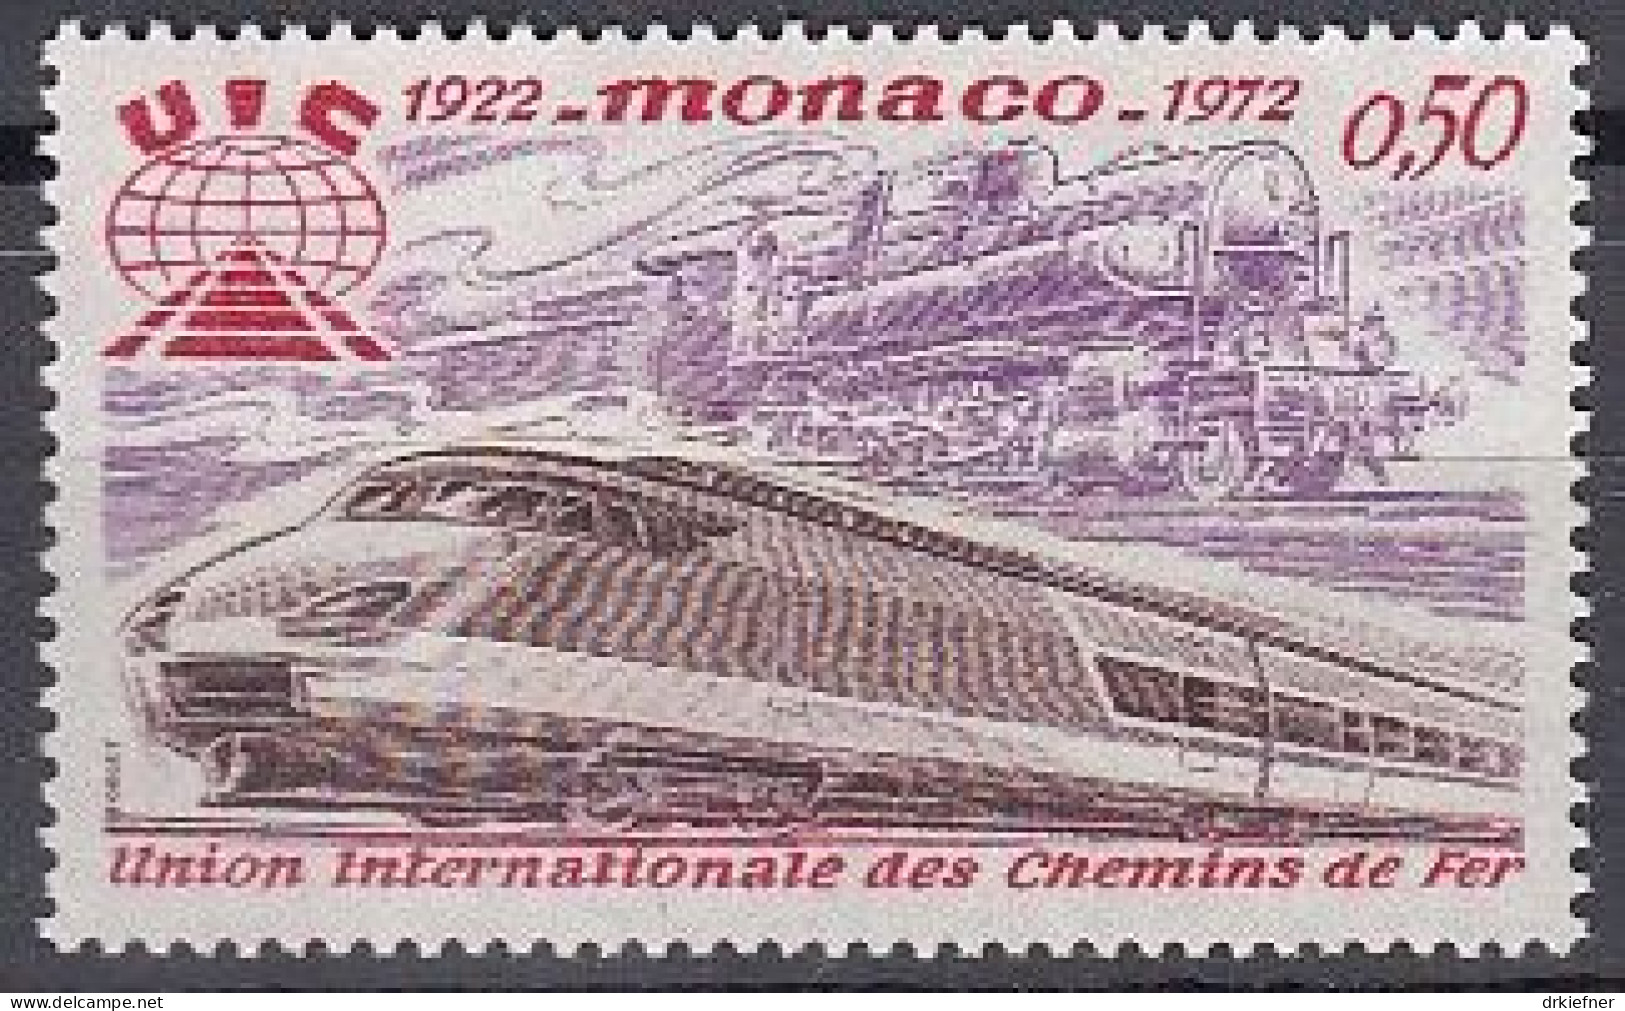 MONACO  1034, Postfrisch **, Eisenbahn-Verband, Dampflok, TGV, 1972 - Neufs